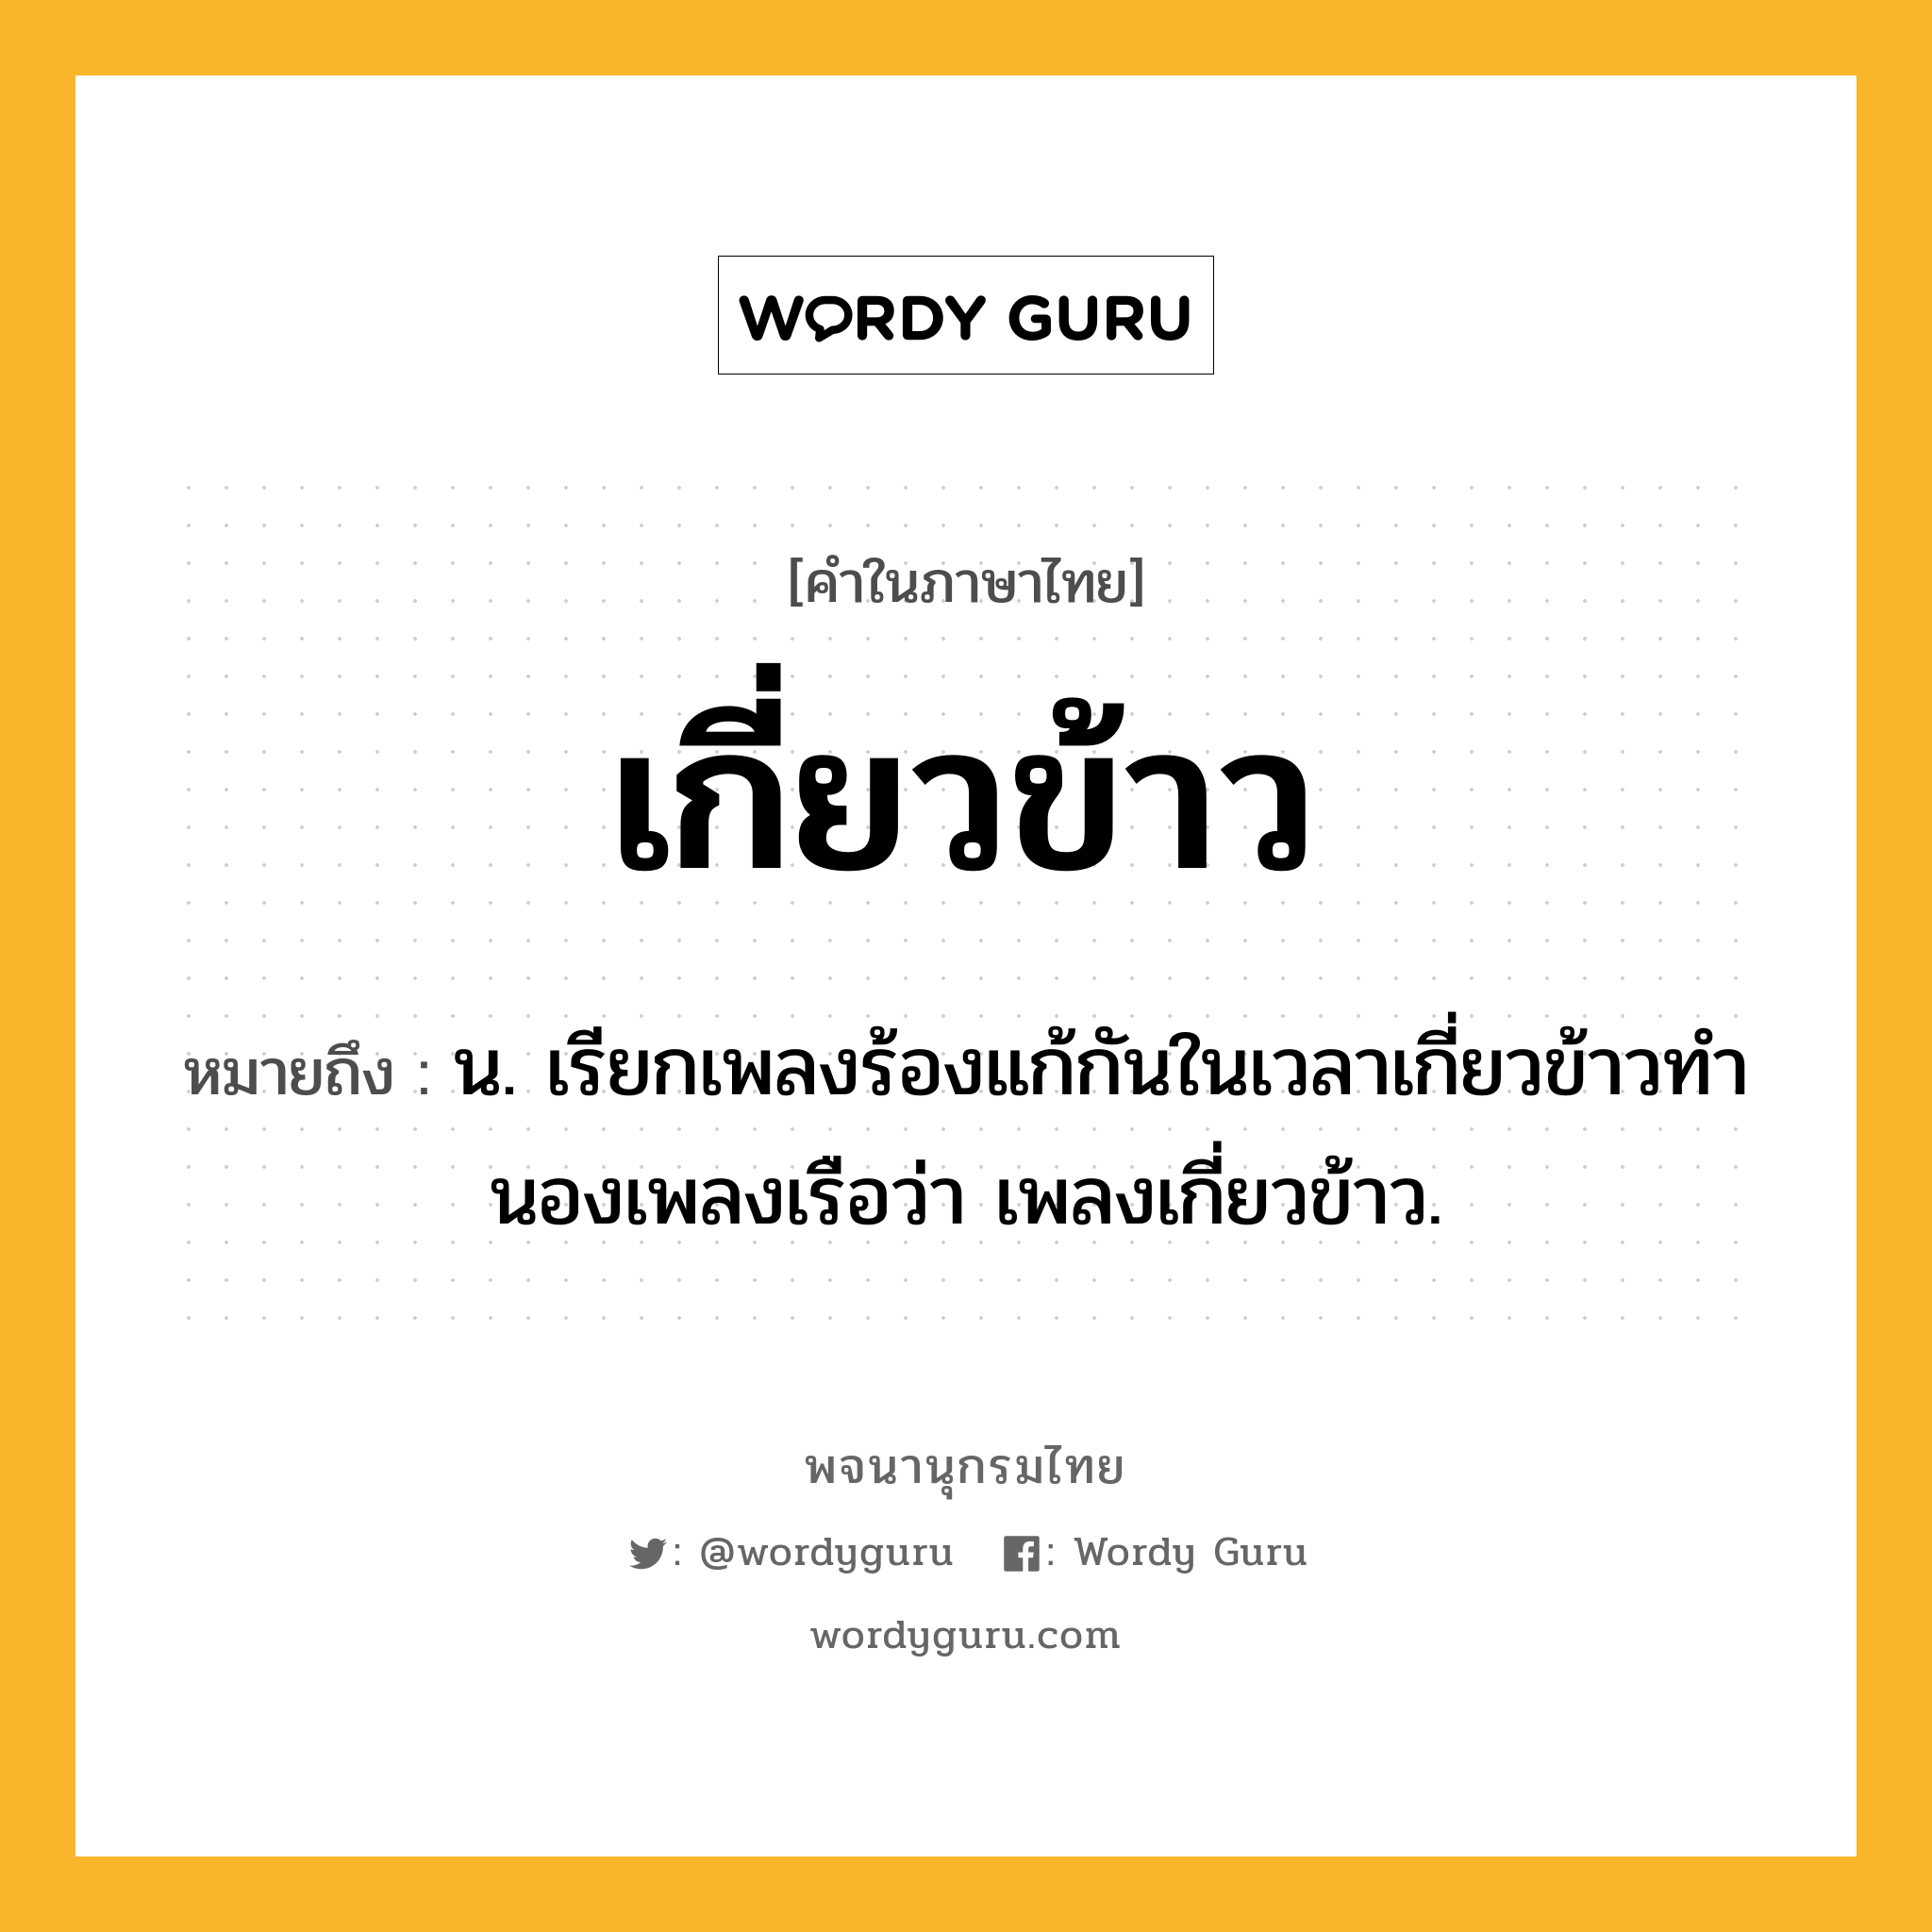 เกี่ยวข้าว ความหมาย หมายถึงอะไร?, คำในภาษาไทย เกี่ยวข้าว หมายถึง น. เรียกเพลงร้องแก้กันในเวลาเกี่ยวข้าวทํานองเพลงเรือว่า เพลงเกี่ยวข้าว.